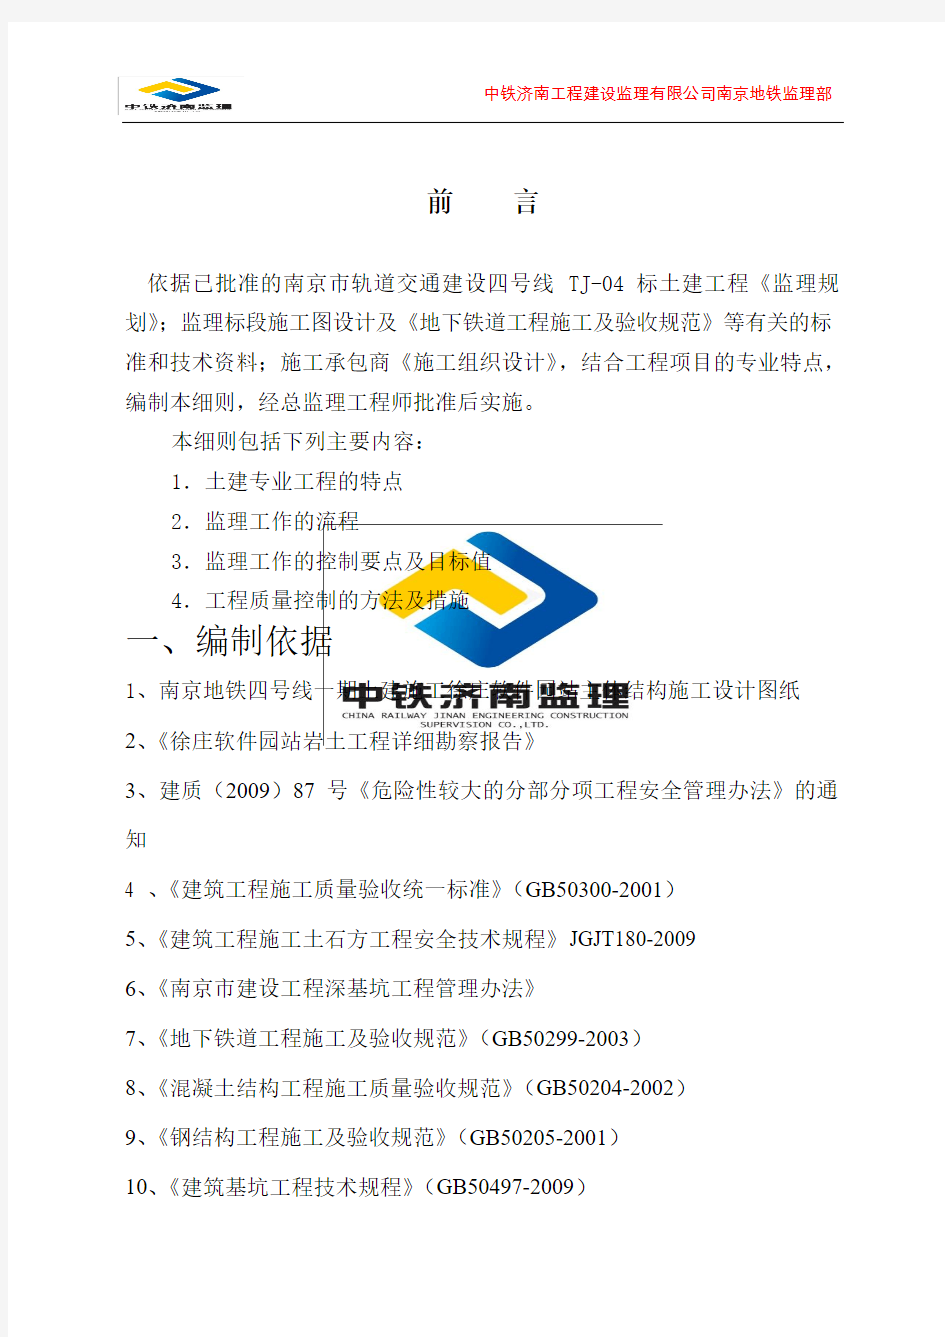 徐庄软件园车站主体结构监理实施细则